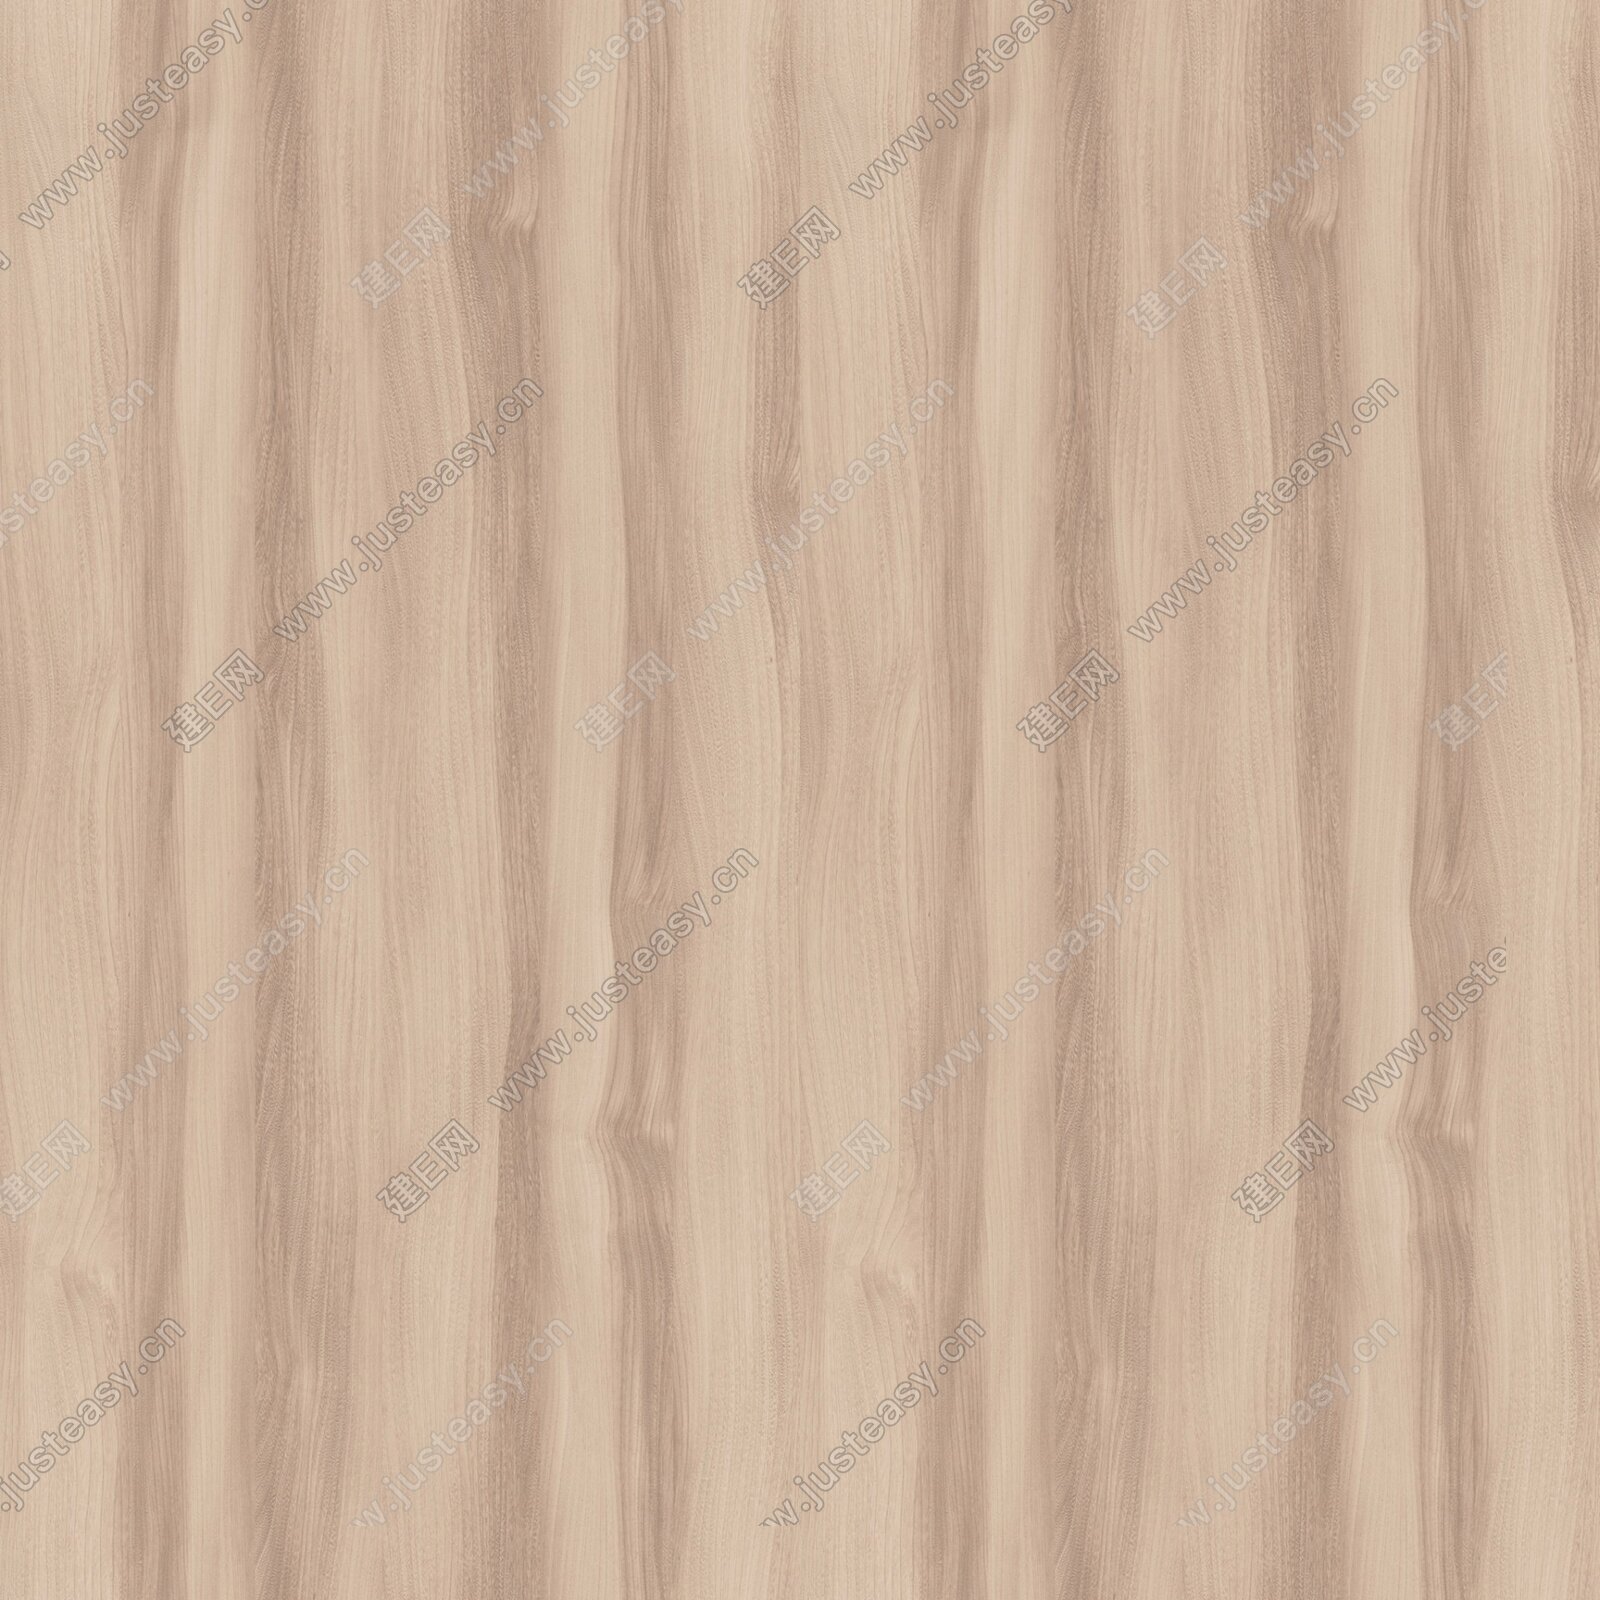 高清木饰面 木纹贴图3d贴图